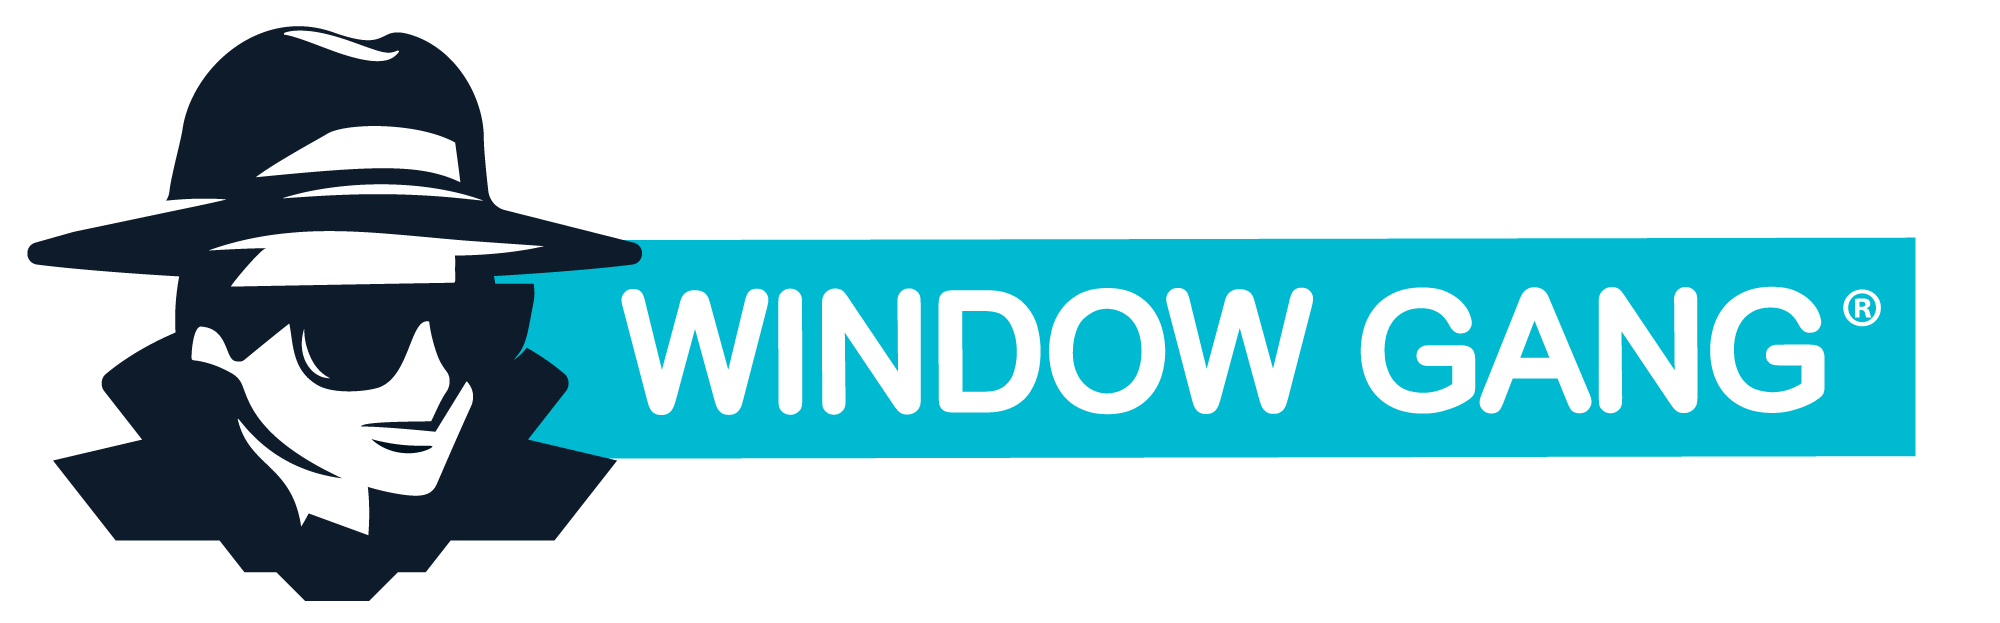 Window Gang Window Cleaning Company